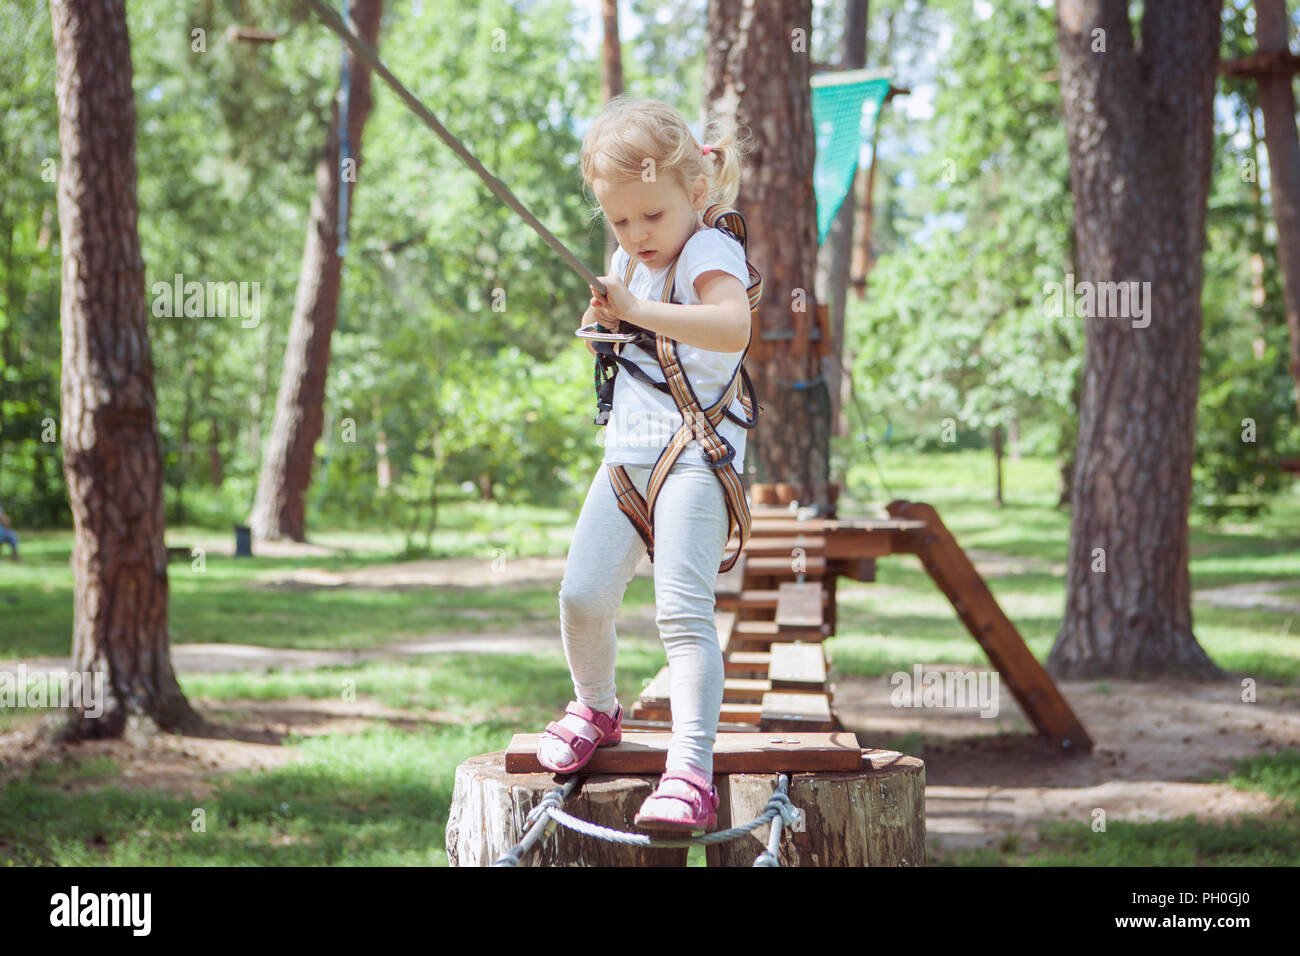 Freizeitgestaltung für Kinder. Kleines Mädchen Spaß im Seilpark. Stockfoto